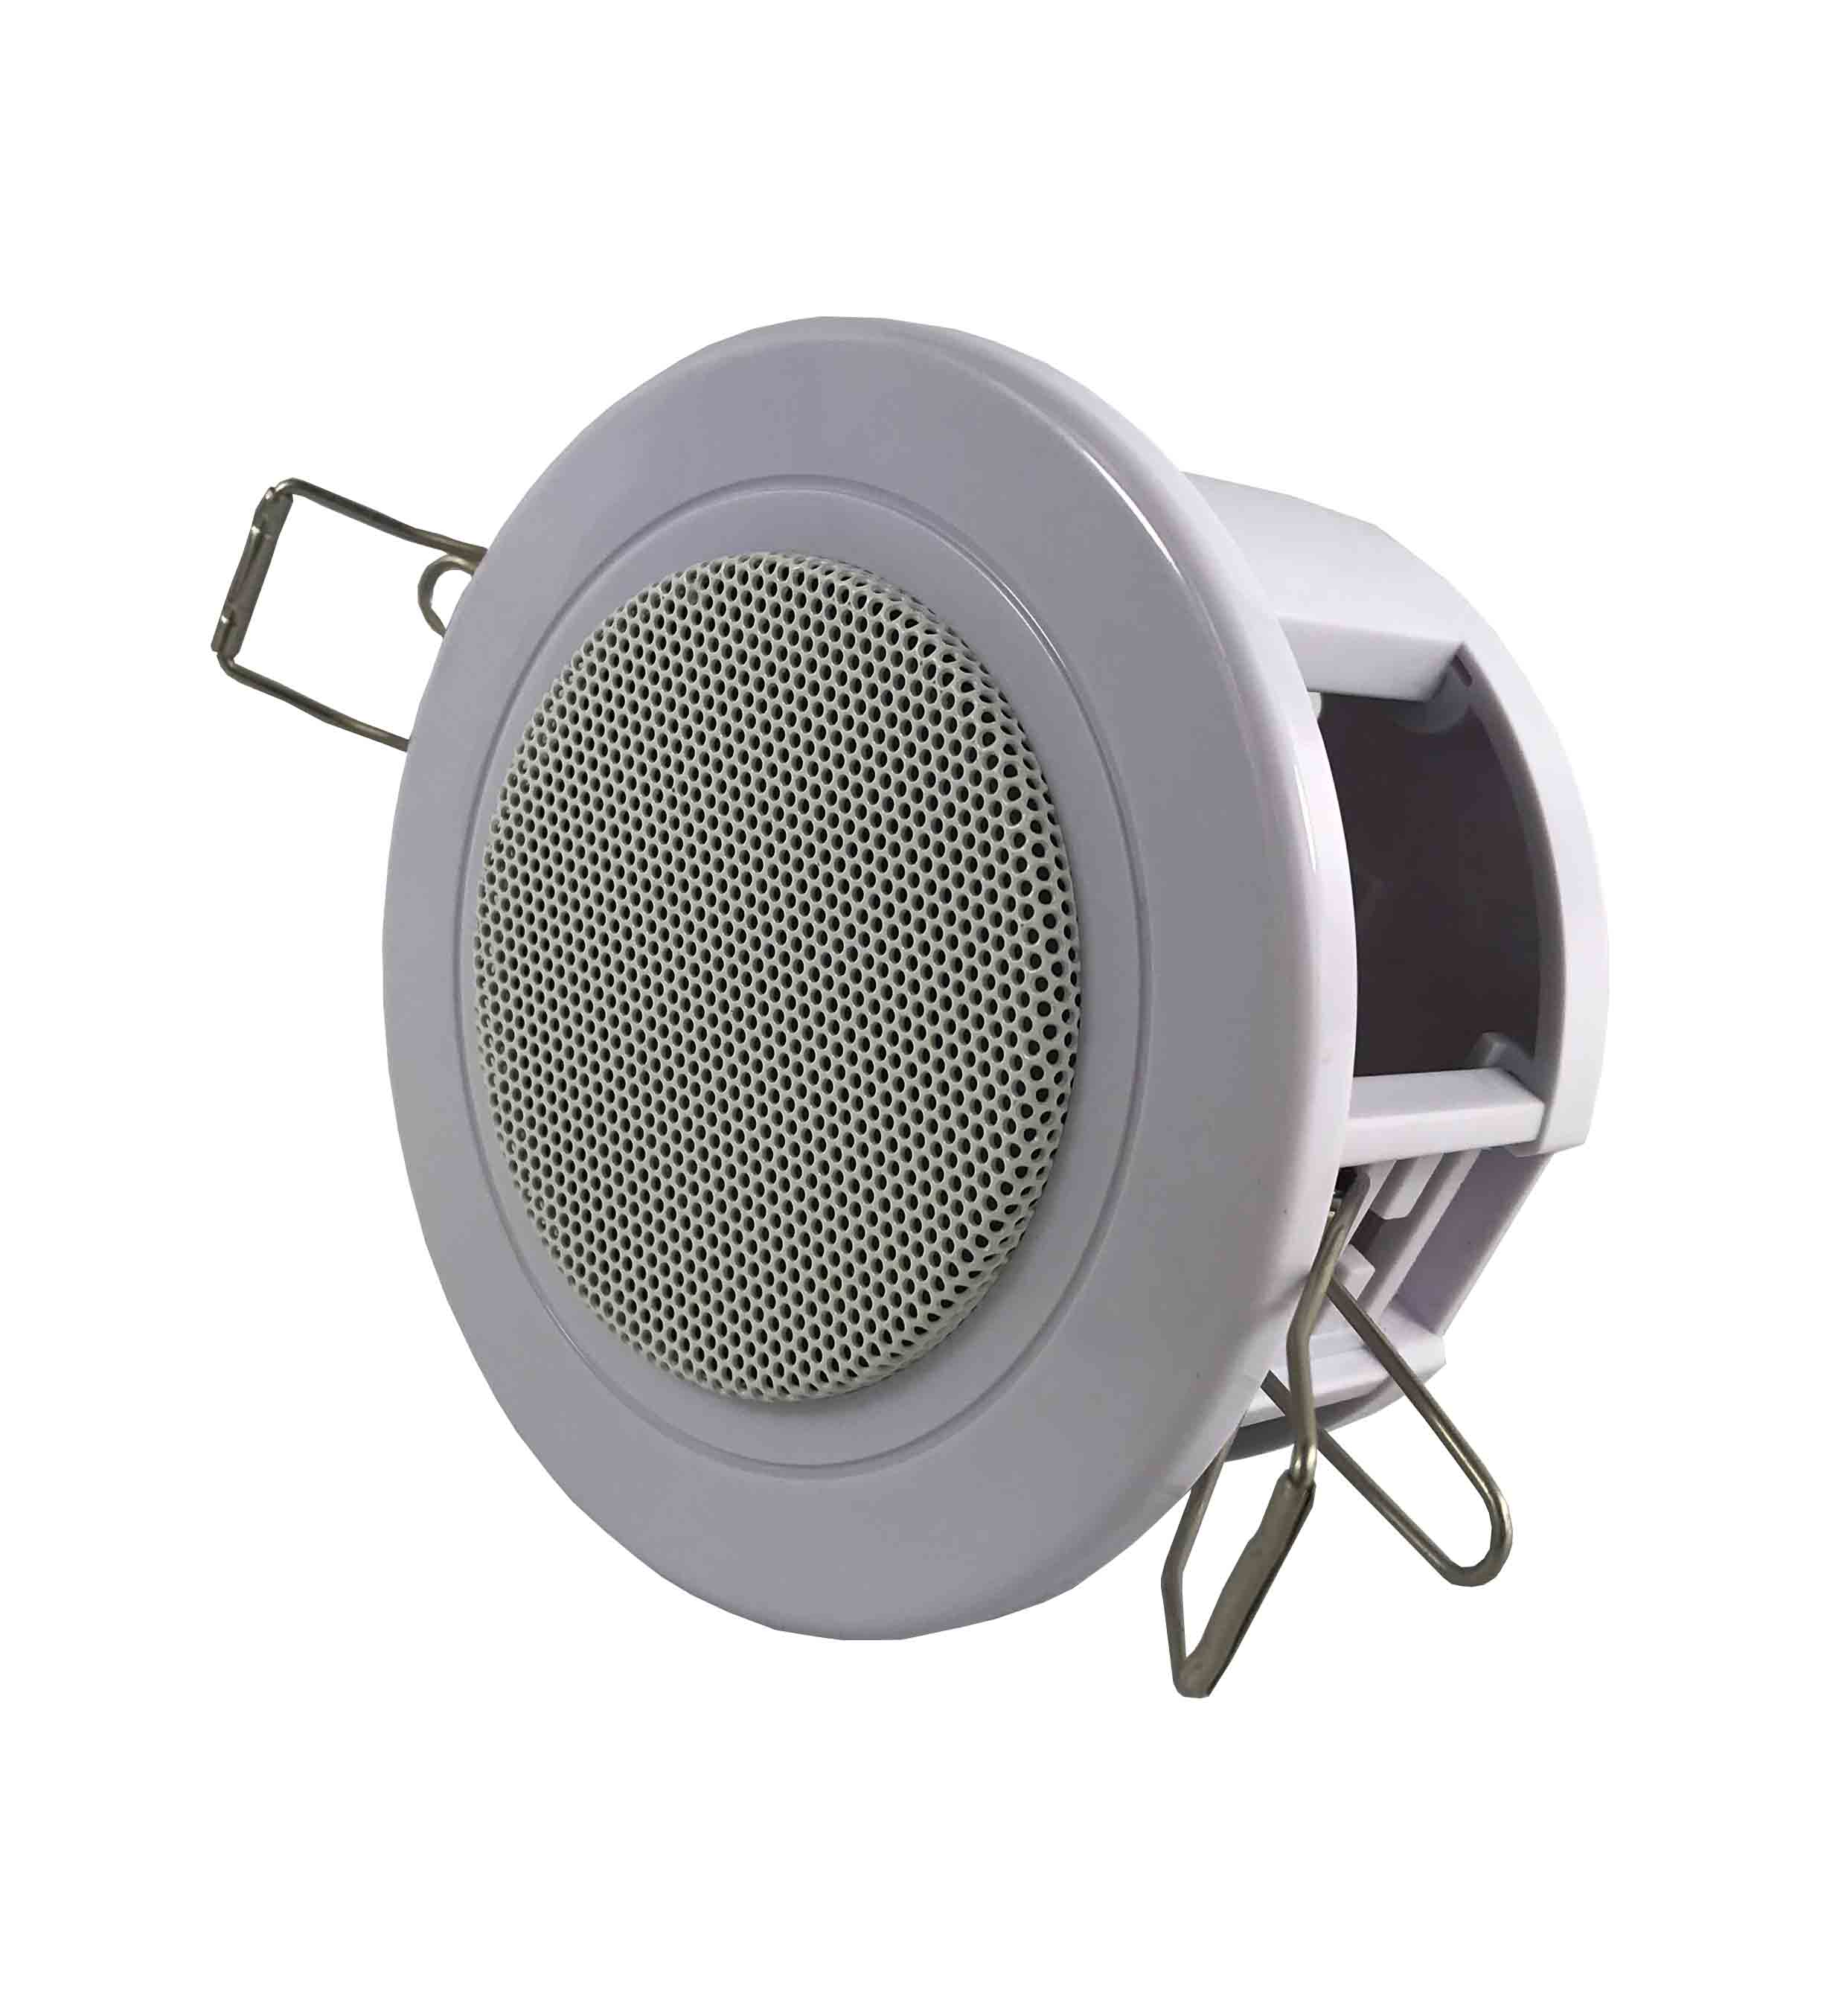 TH-813 Ceiling speaker